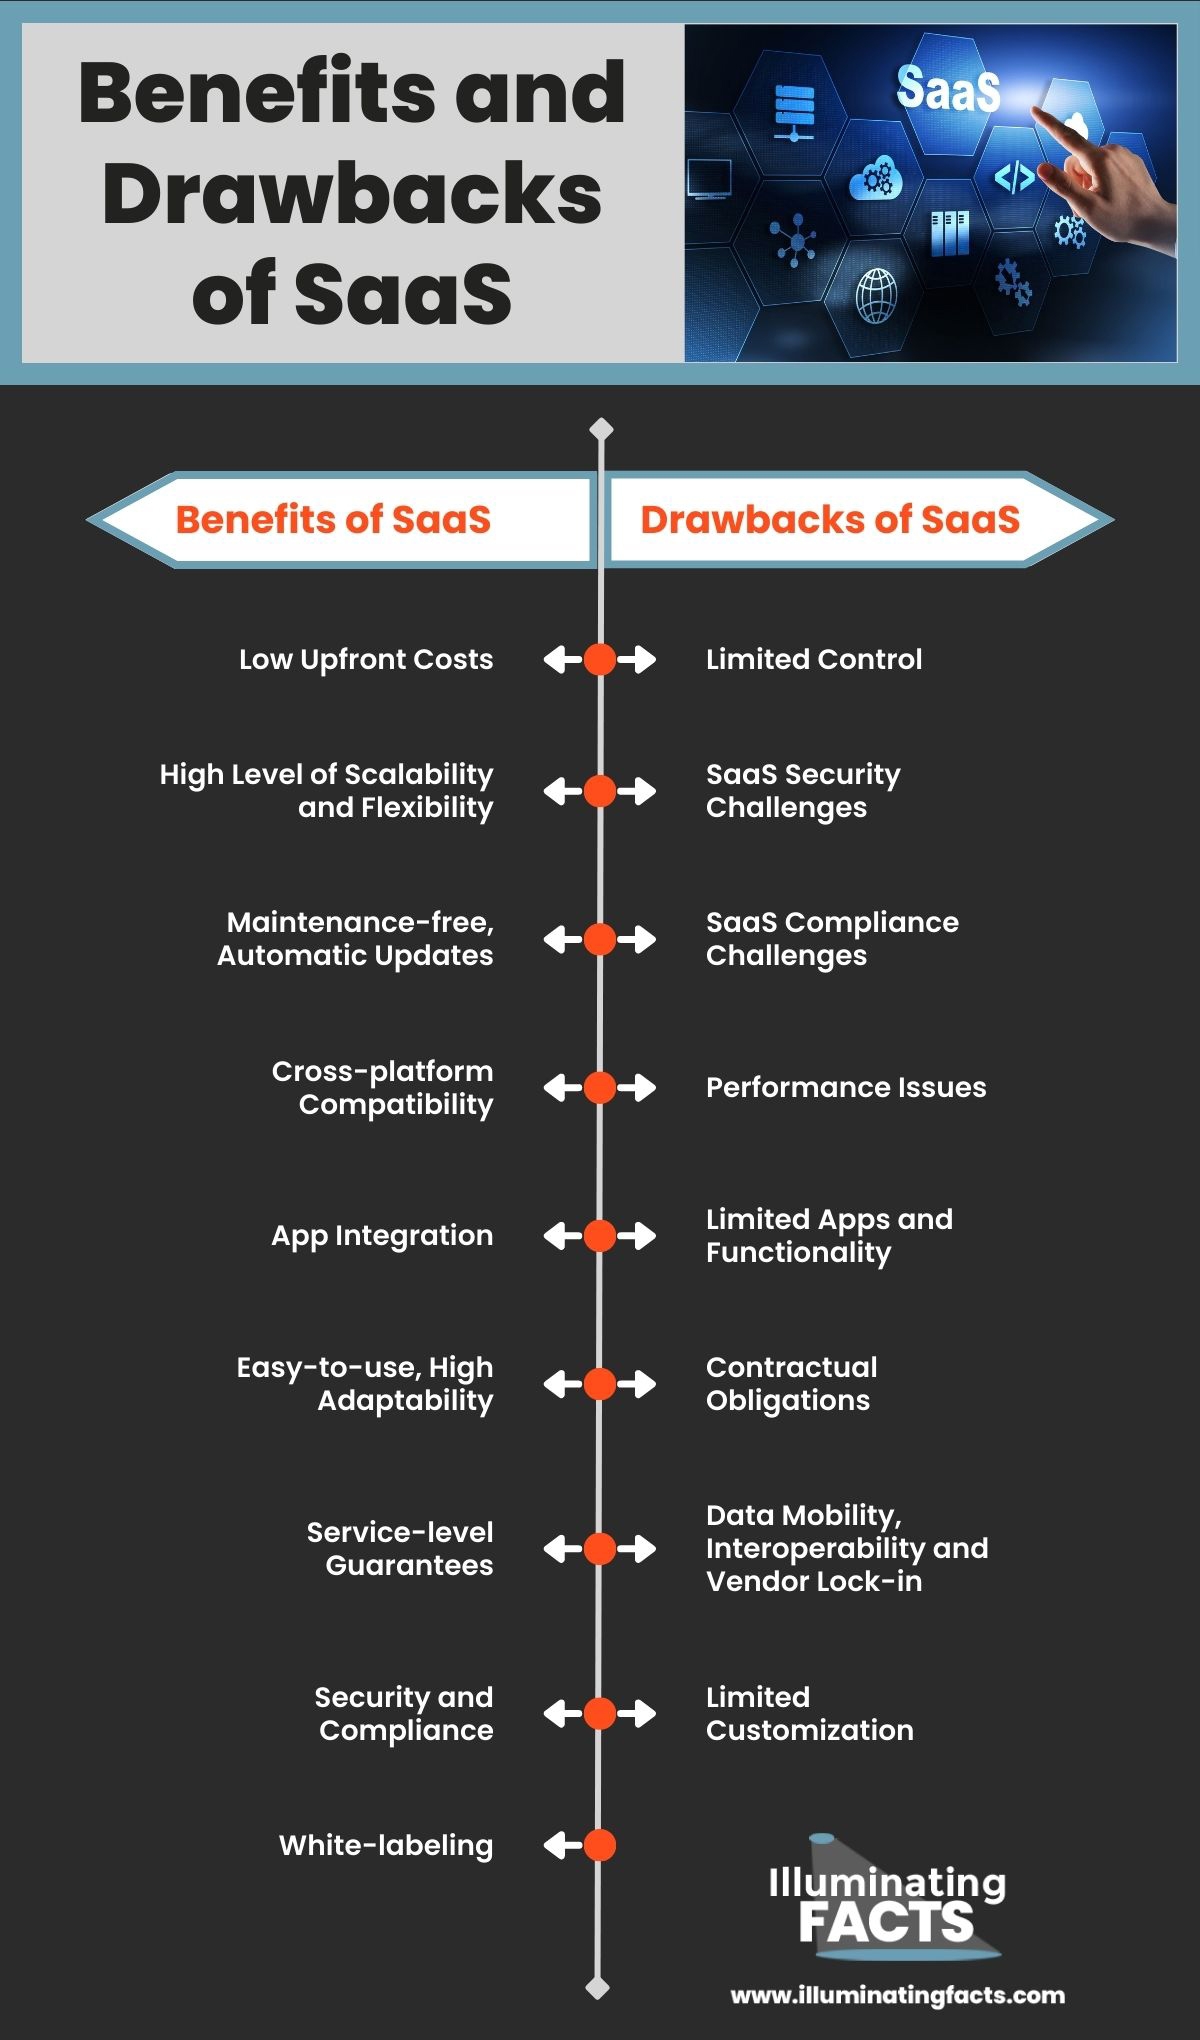 Benefits and Drawbacks of SaaS